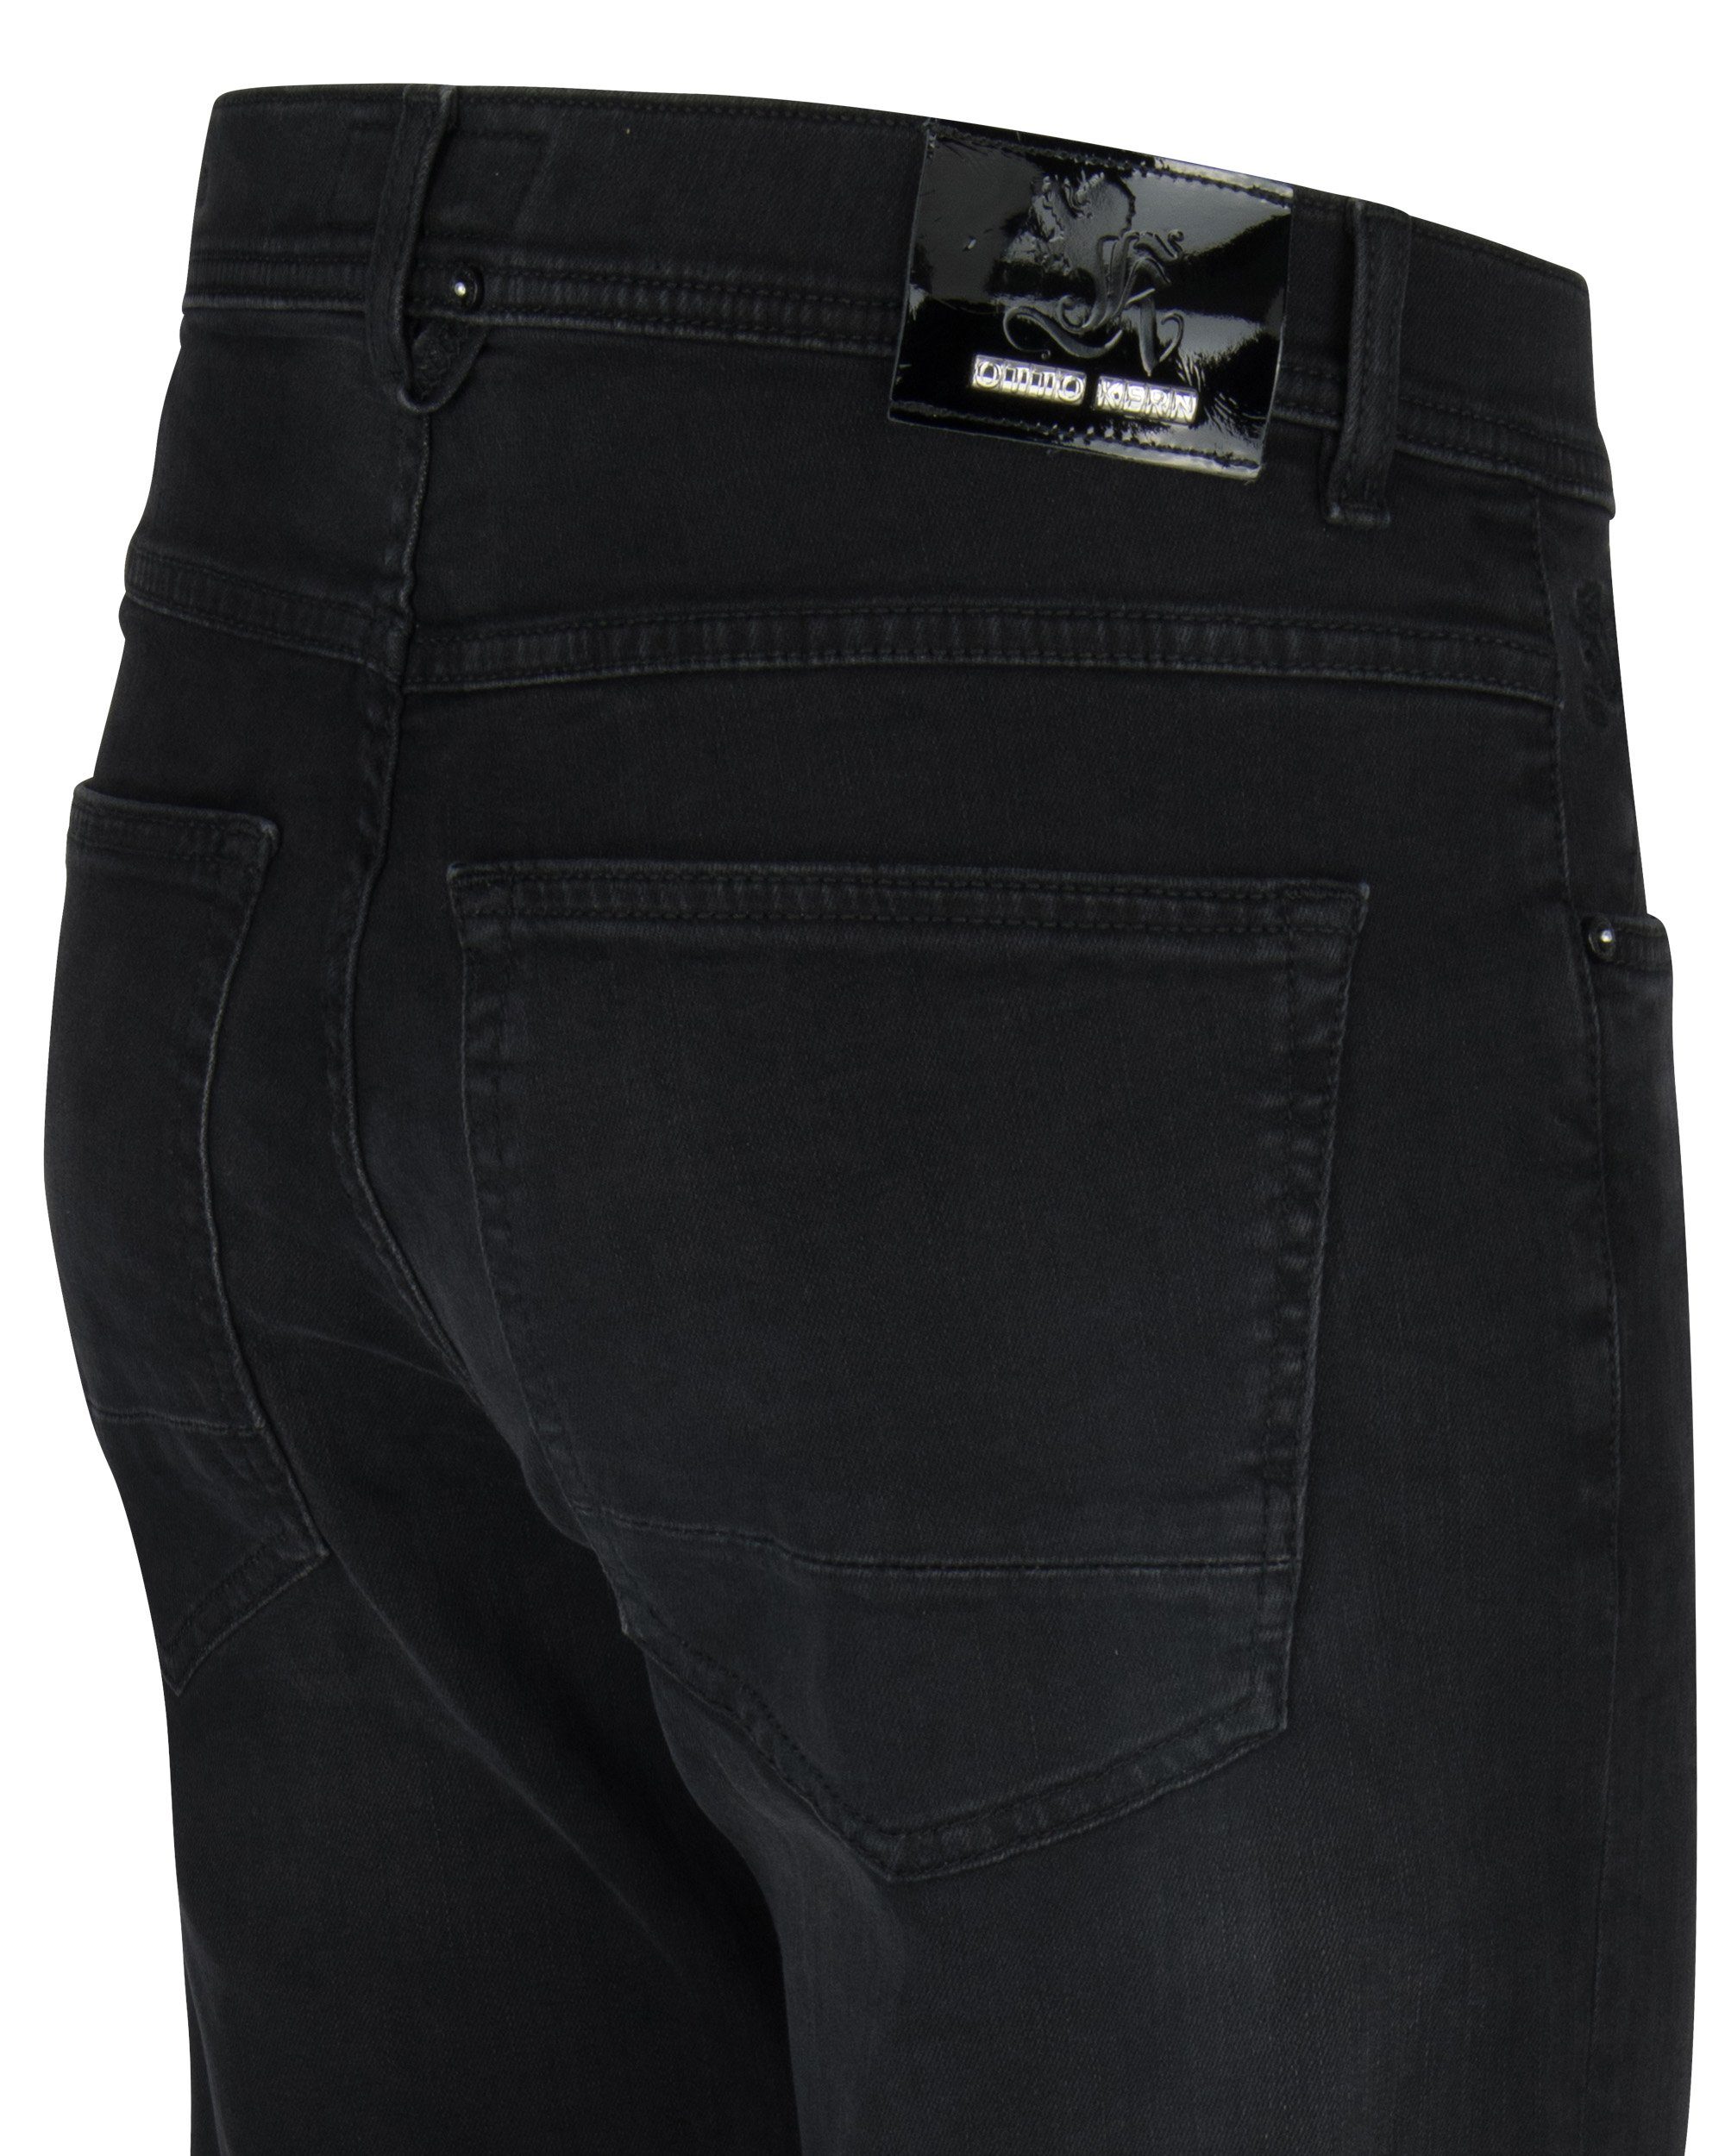 black 5-Pocket-Jeans 67151 6853.9814 Kern KERN OTTO buffies used JOHN dusty